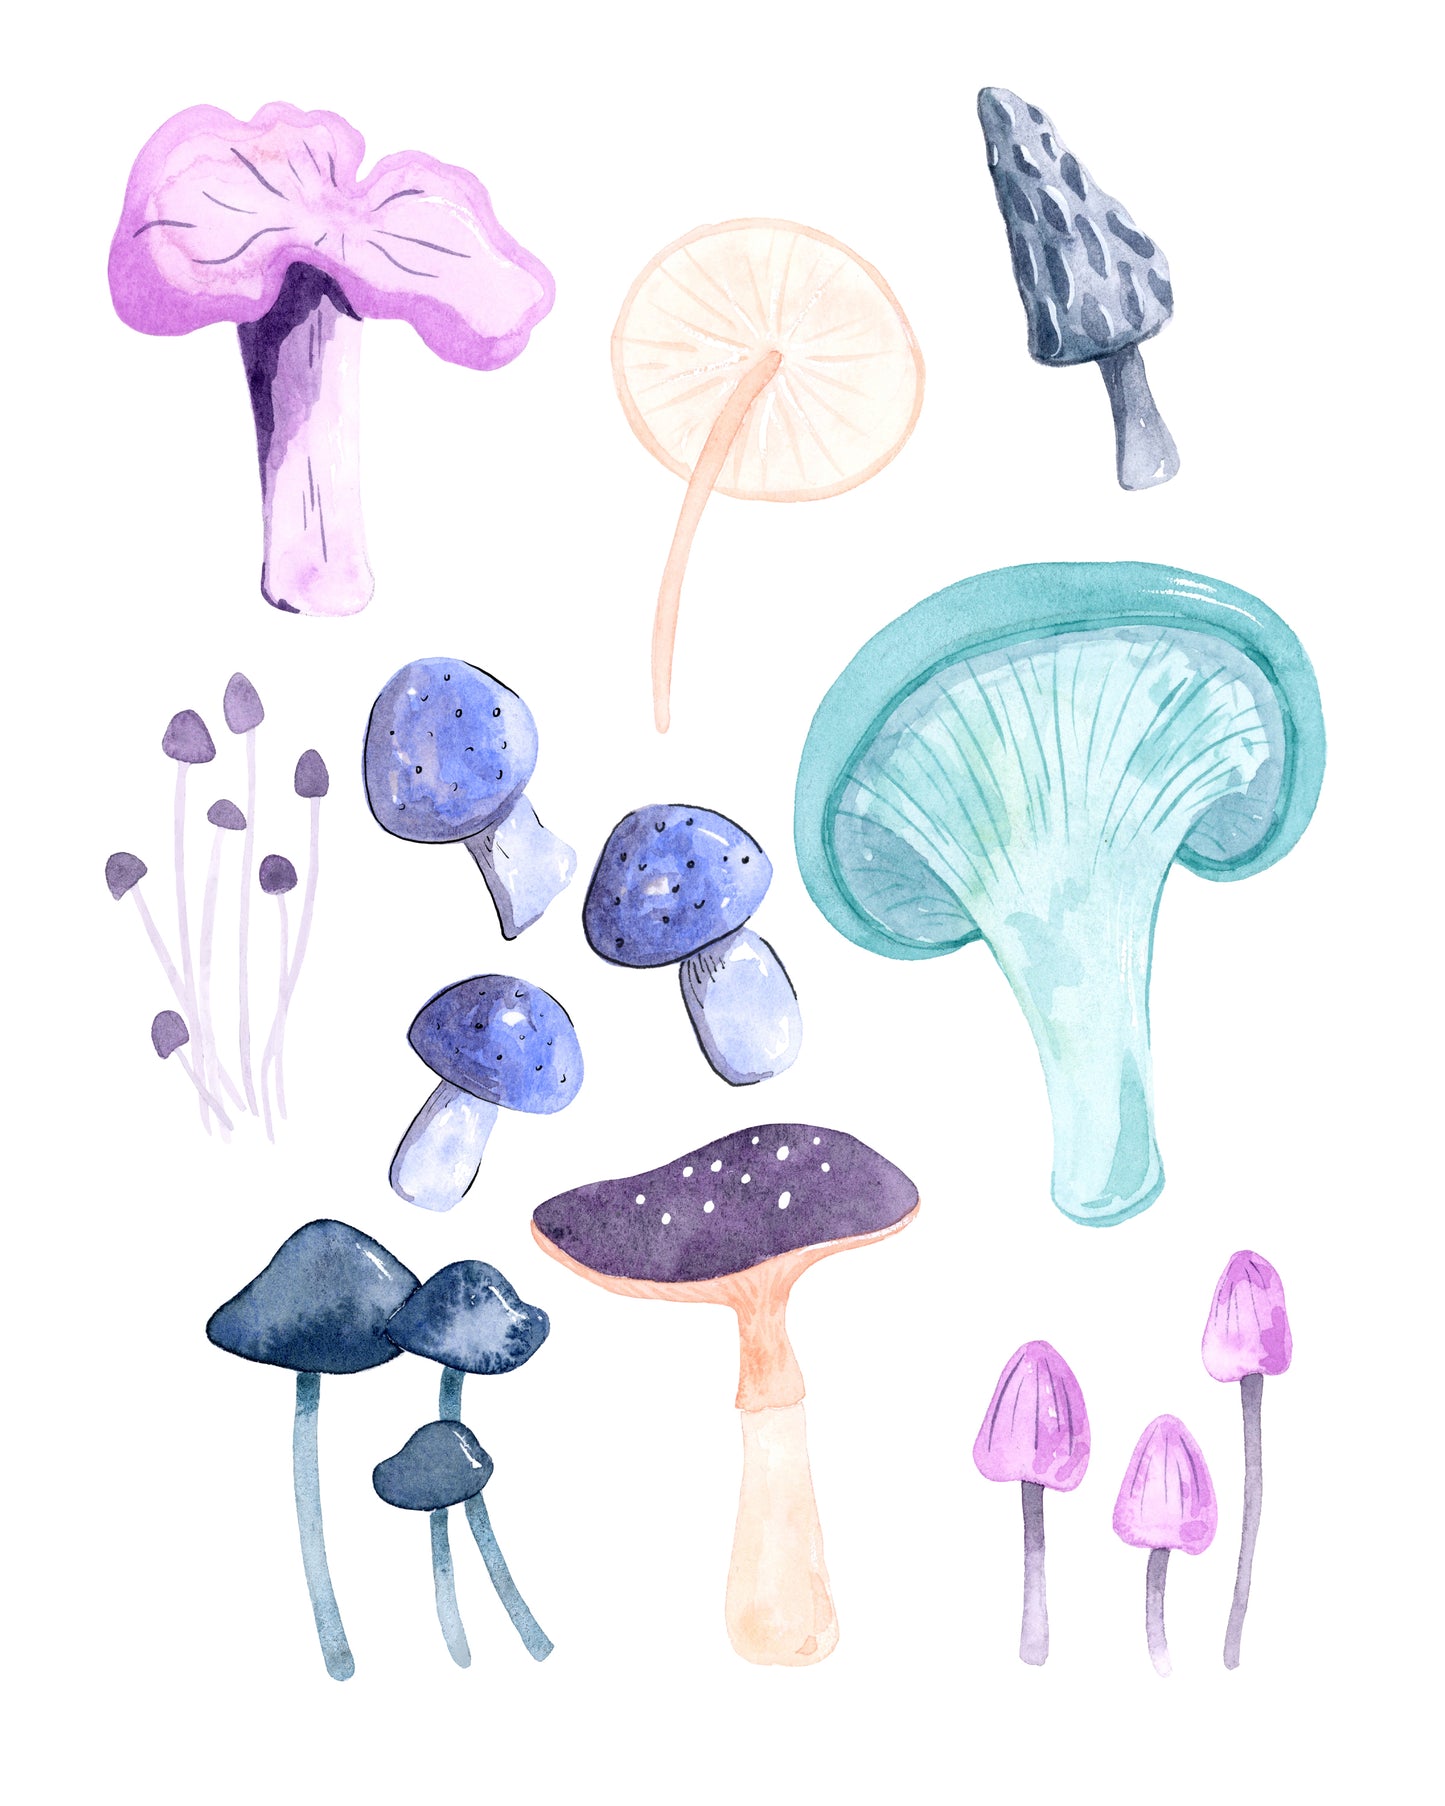 Mushroom Study